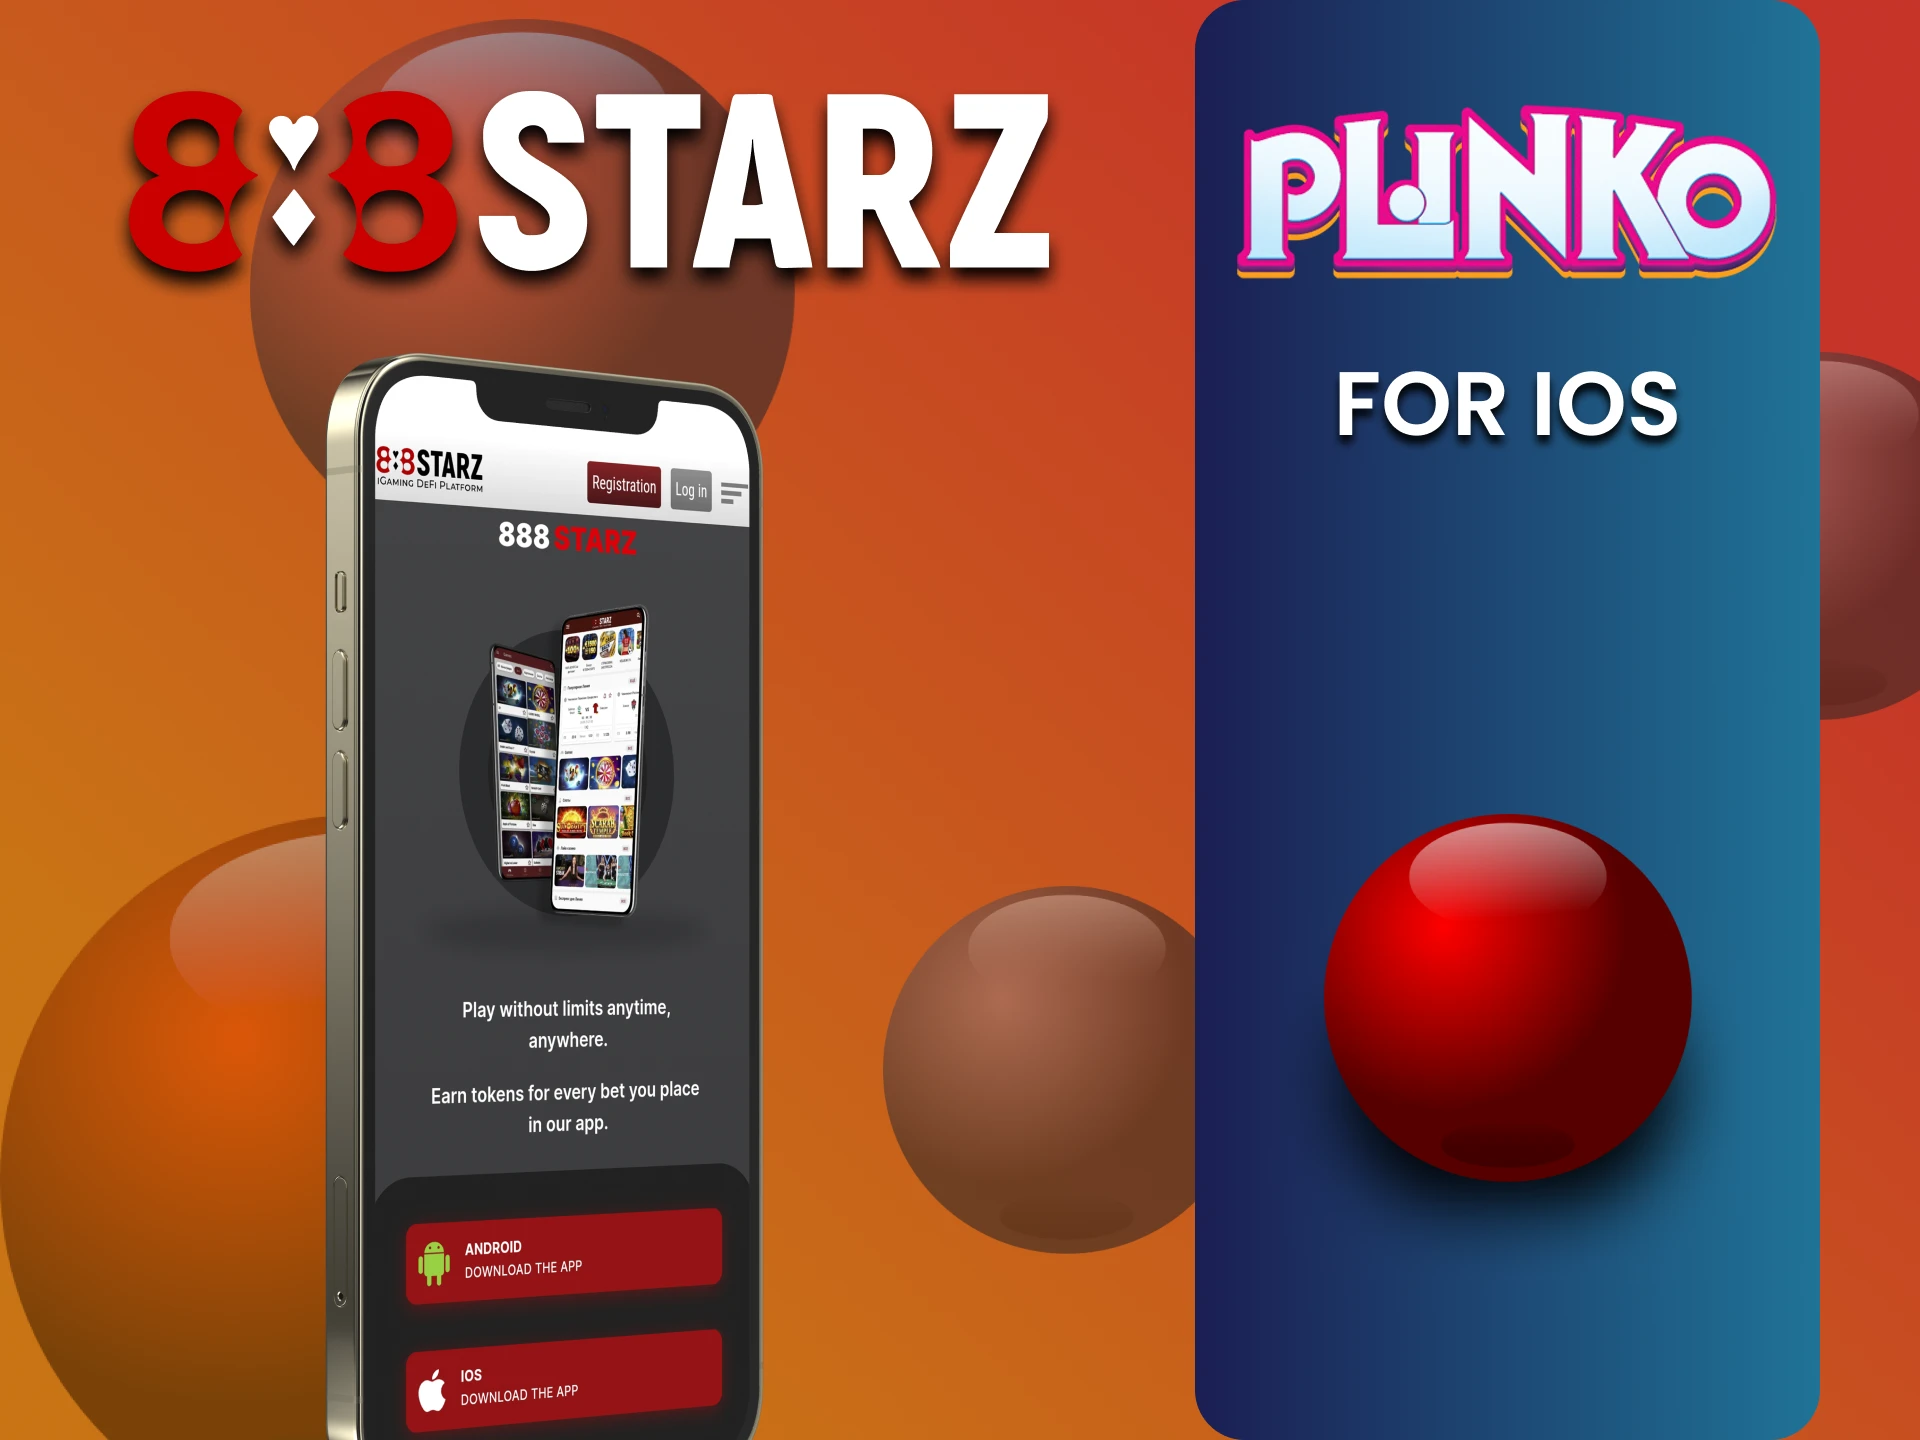 Download the 888starz app to play Plinko on iOS.